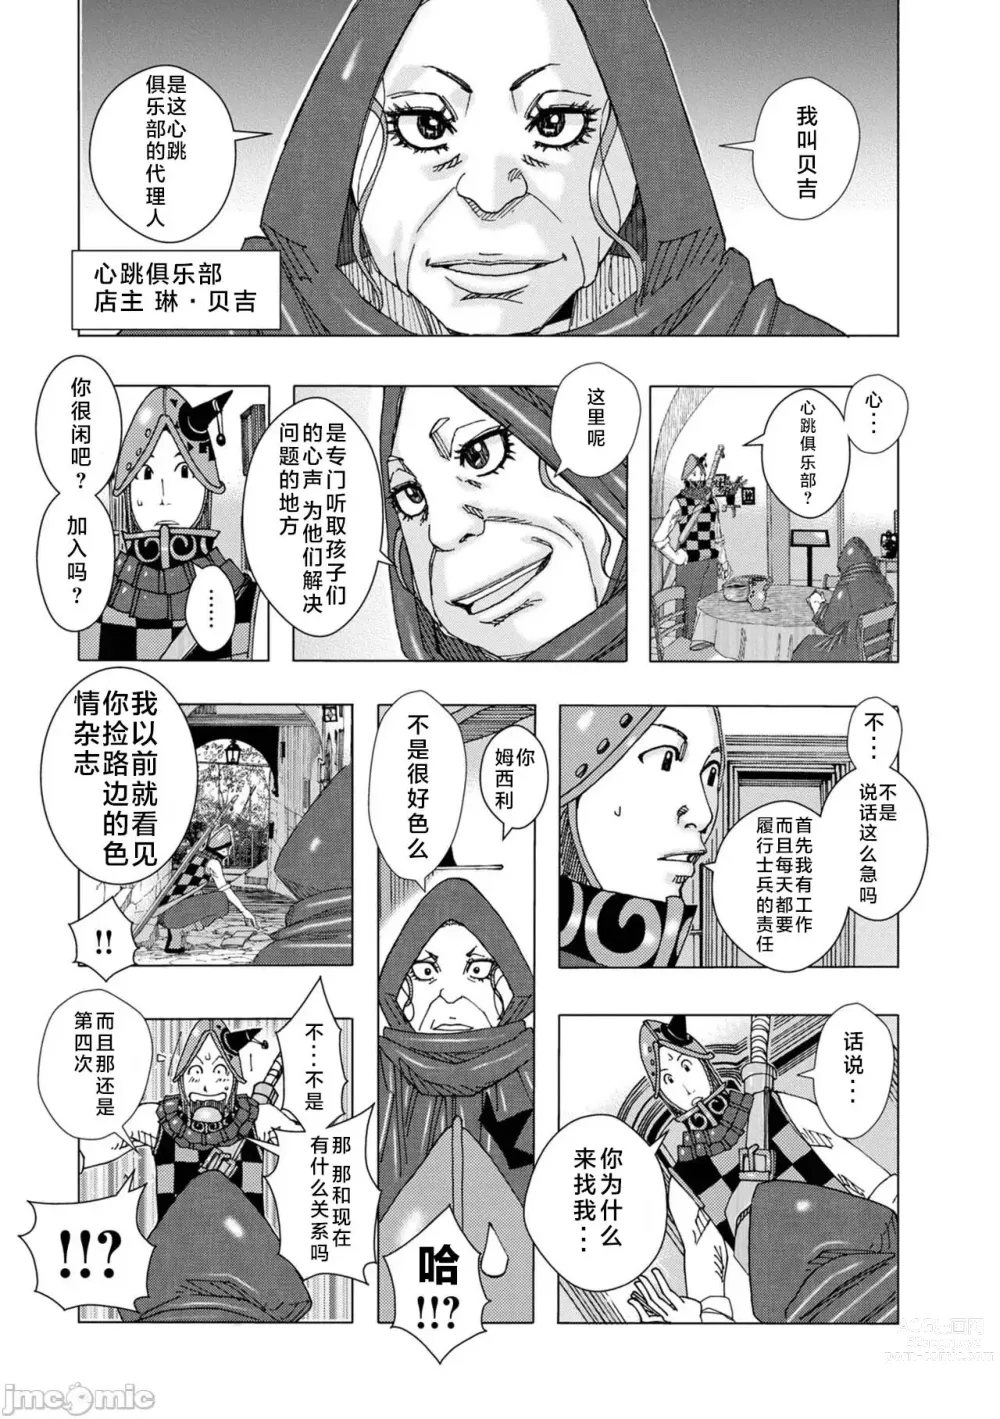 Page 6 of manga bakunyuu hahaonna dakuddaku teishyoku